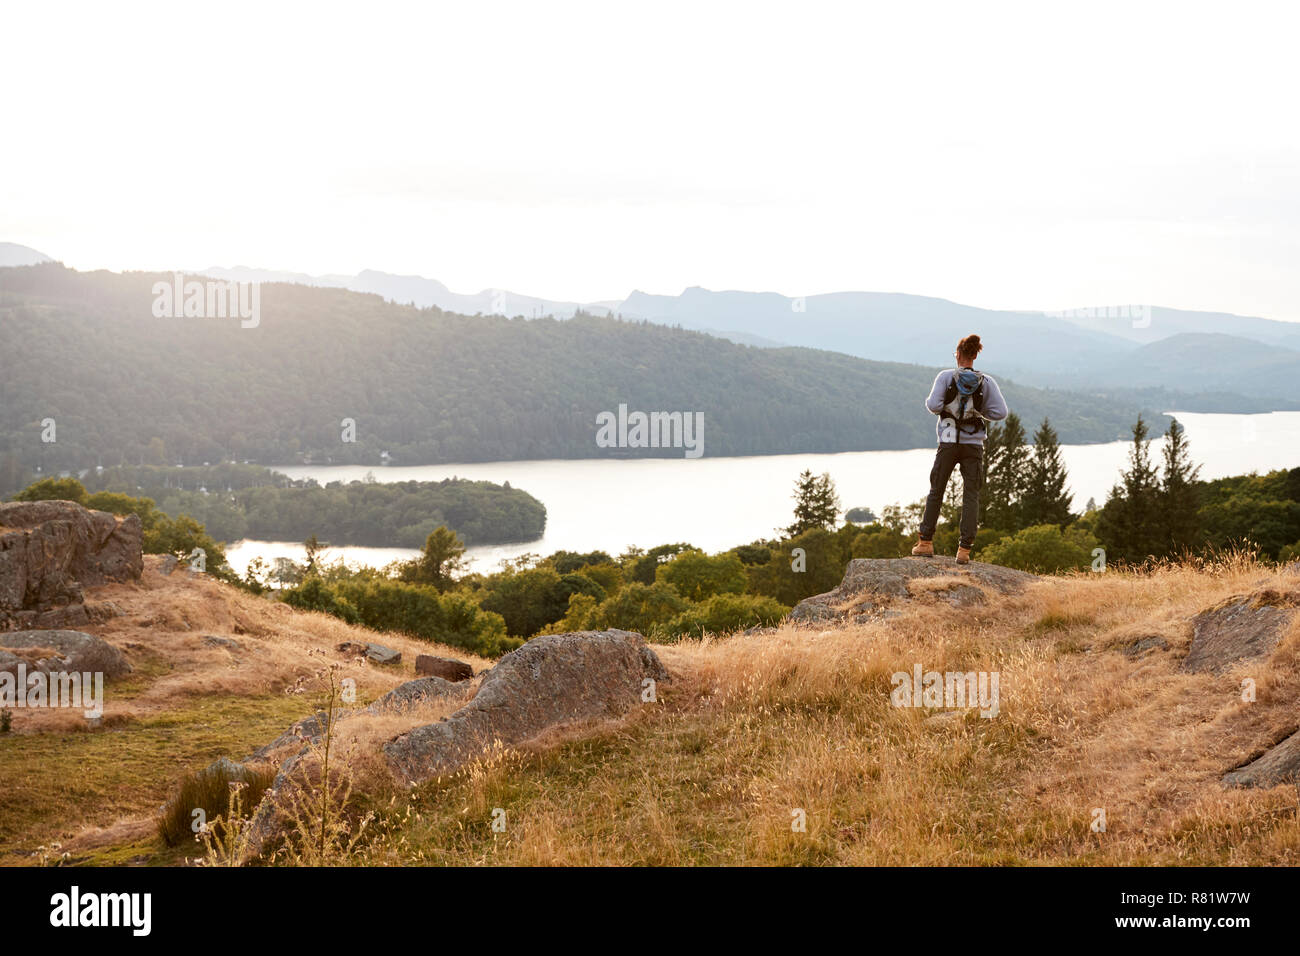 Ein junger gemischter Rasse Mensch allein stehend auf Felsen bewundern, Seeblick, Rückansicht Stockfoto